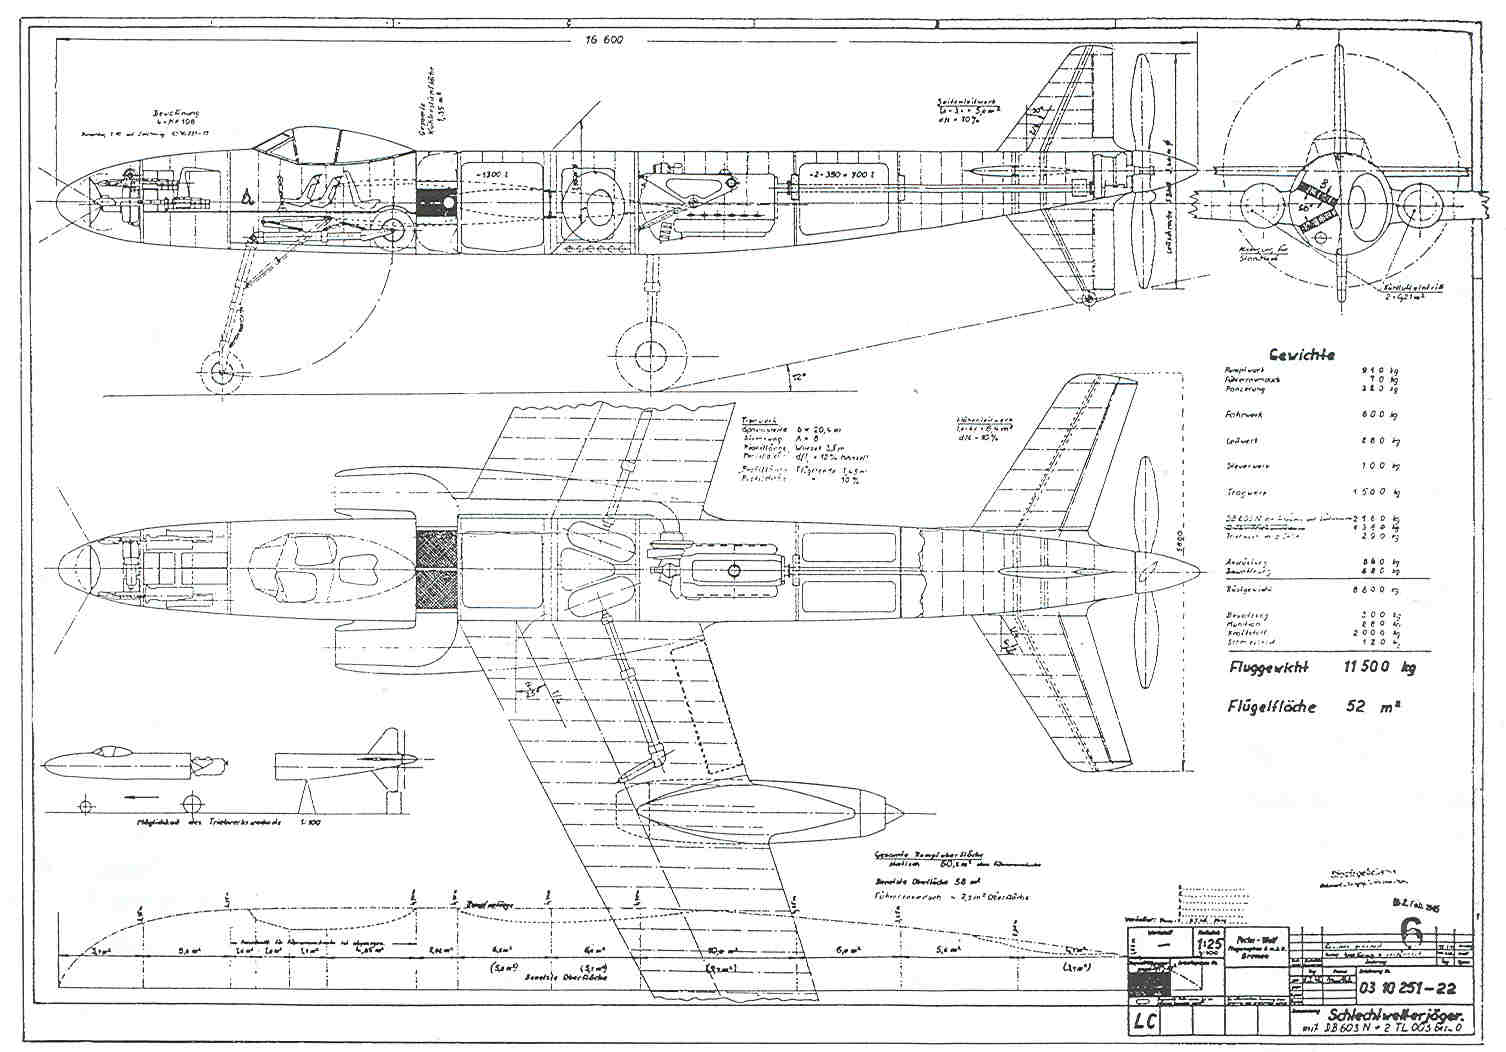 Focke-Wulf P 13 10251-13 / II or P 251-22